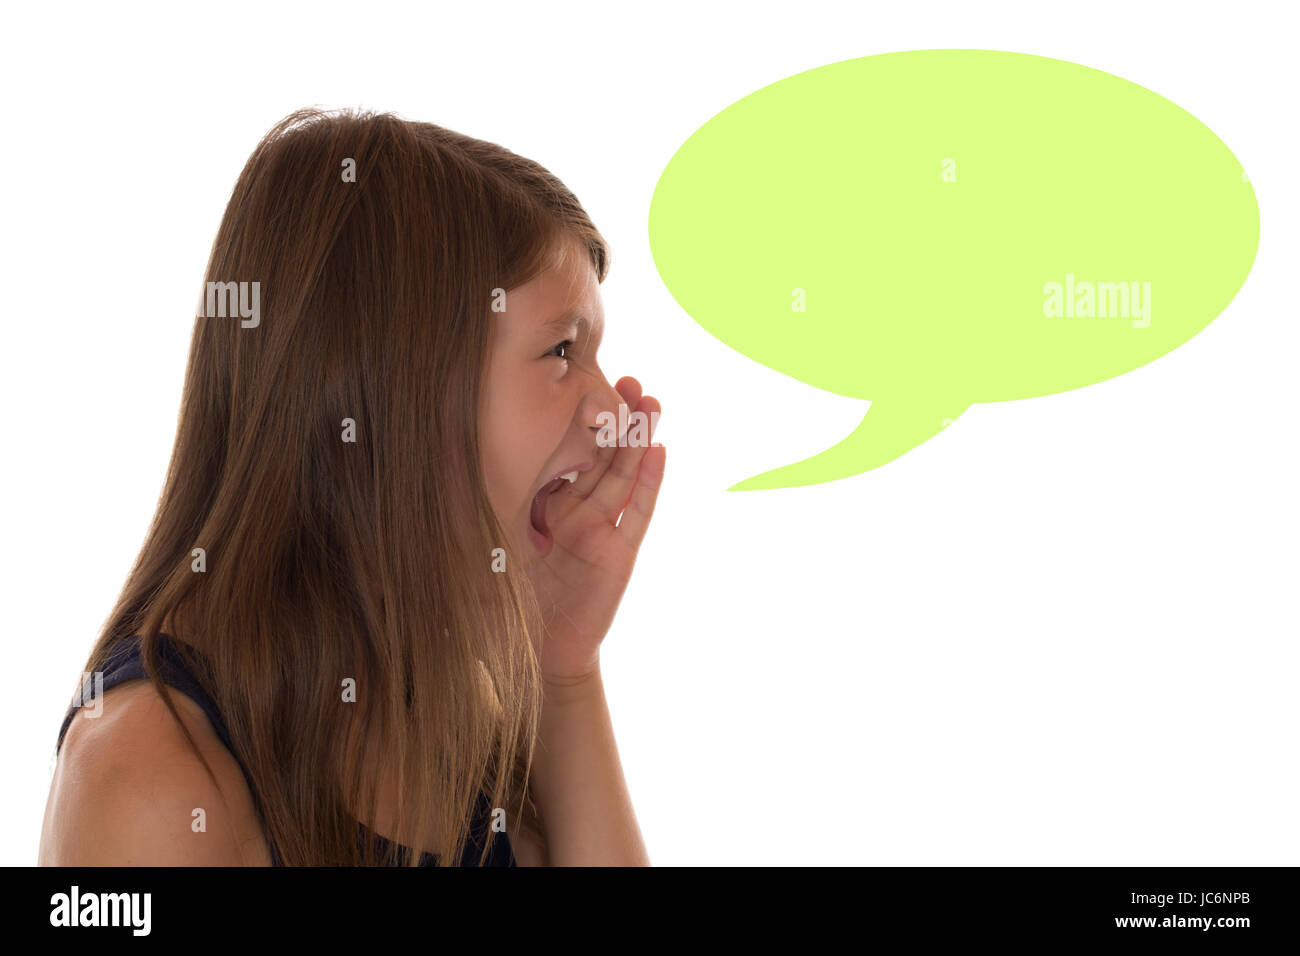 Junges Mädchen beim Schreien mit Sprechblase und Textfreiraum, isoliert vor einem weissen Hintergrund Stock Photo